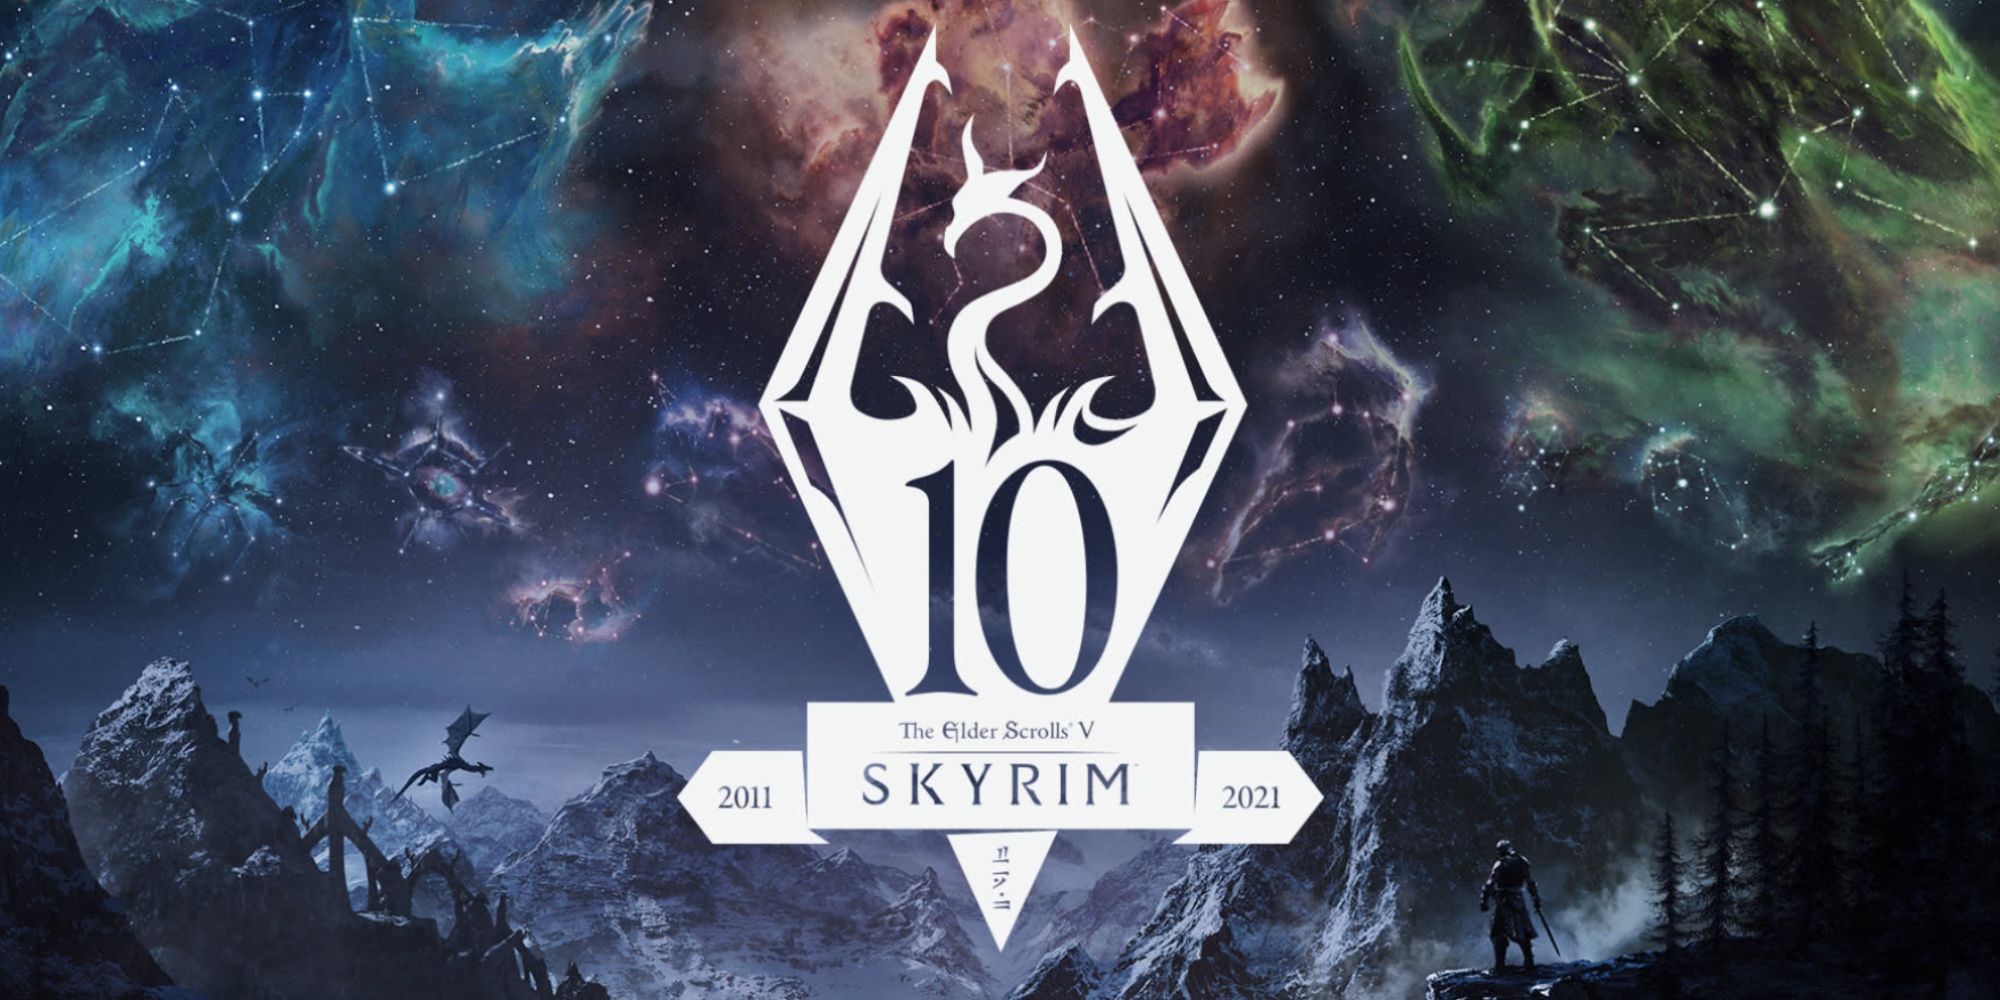 Skyrim 10 Anniversary